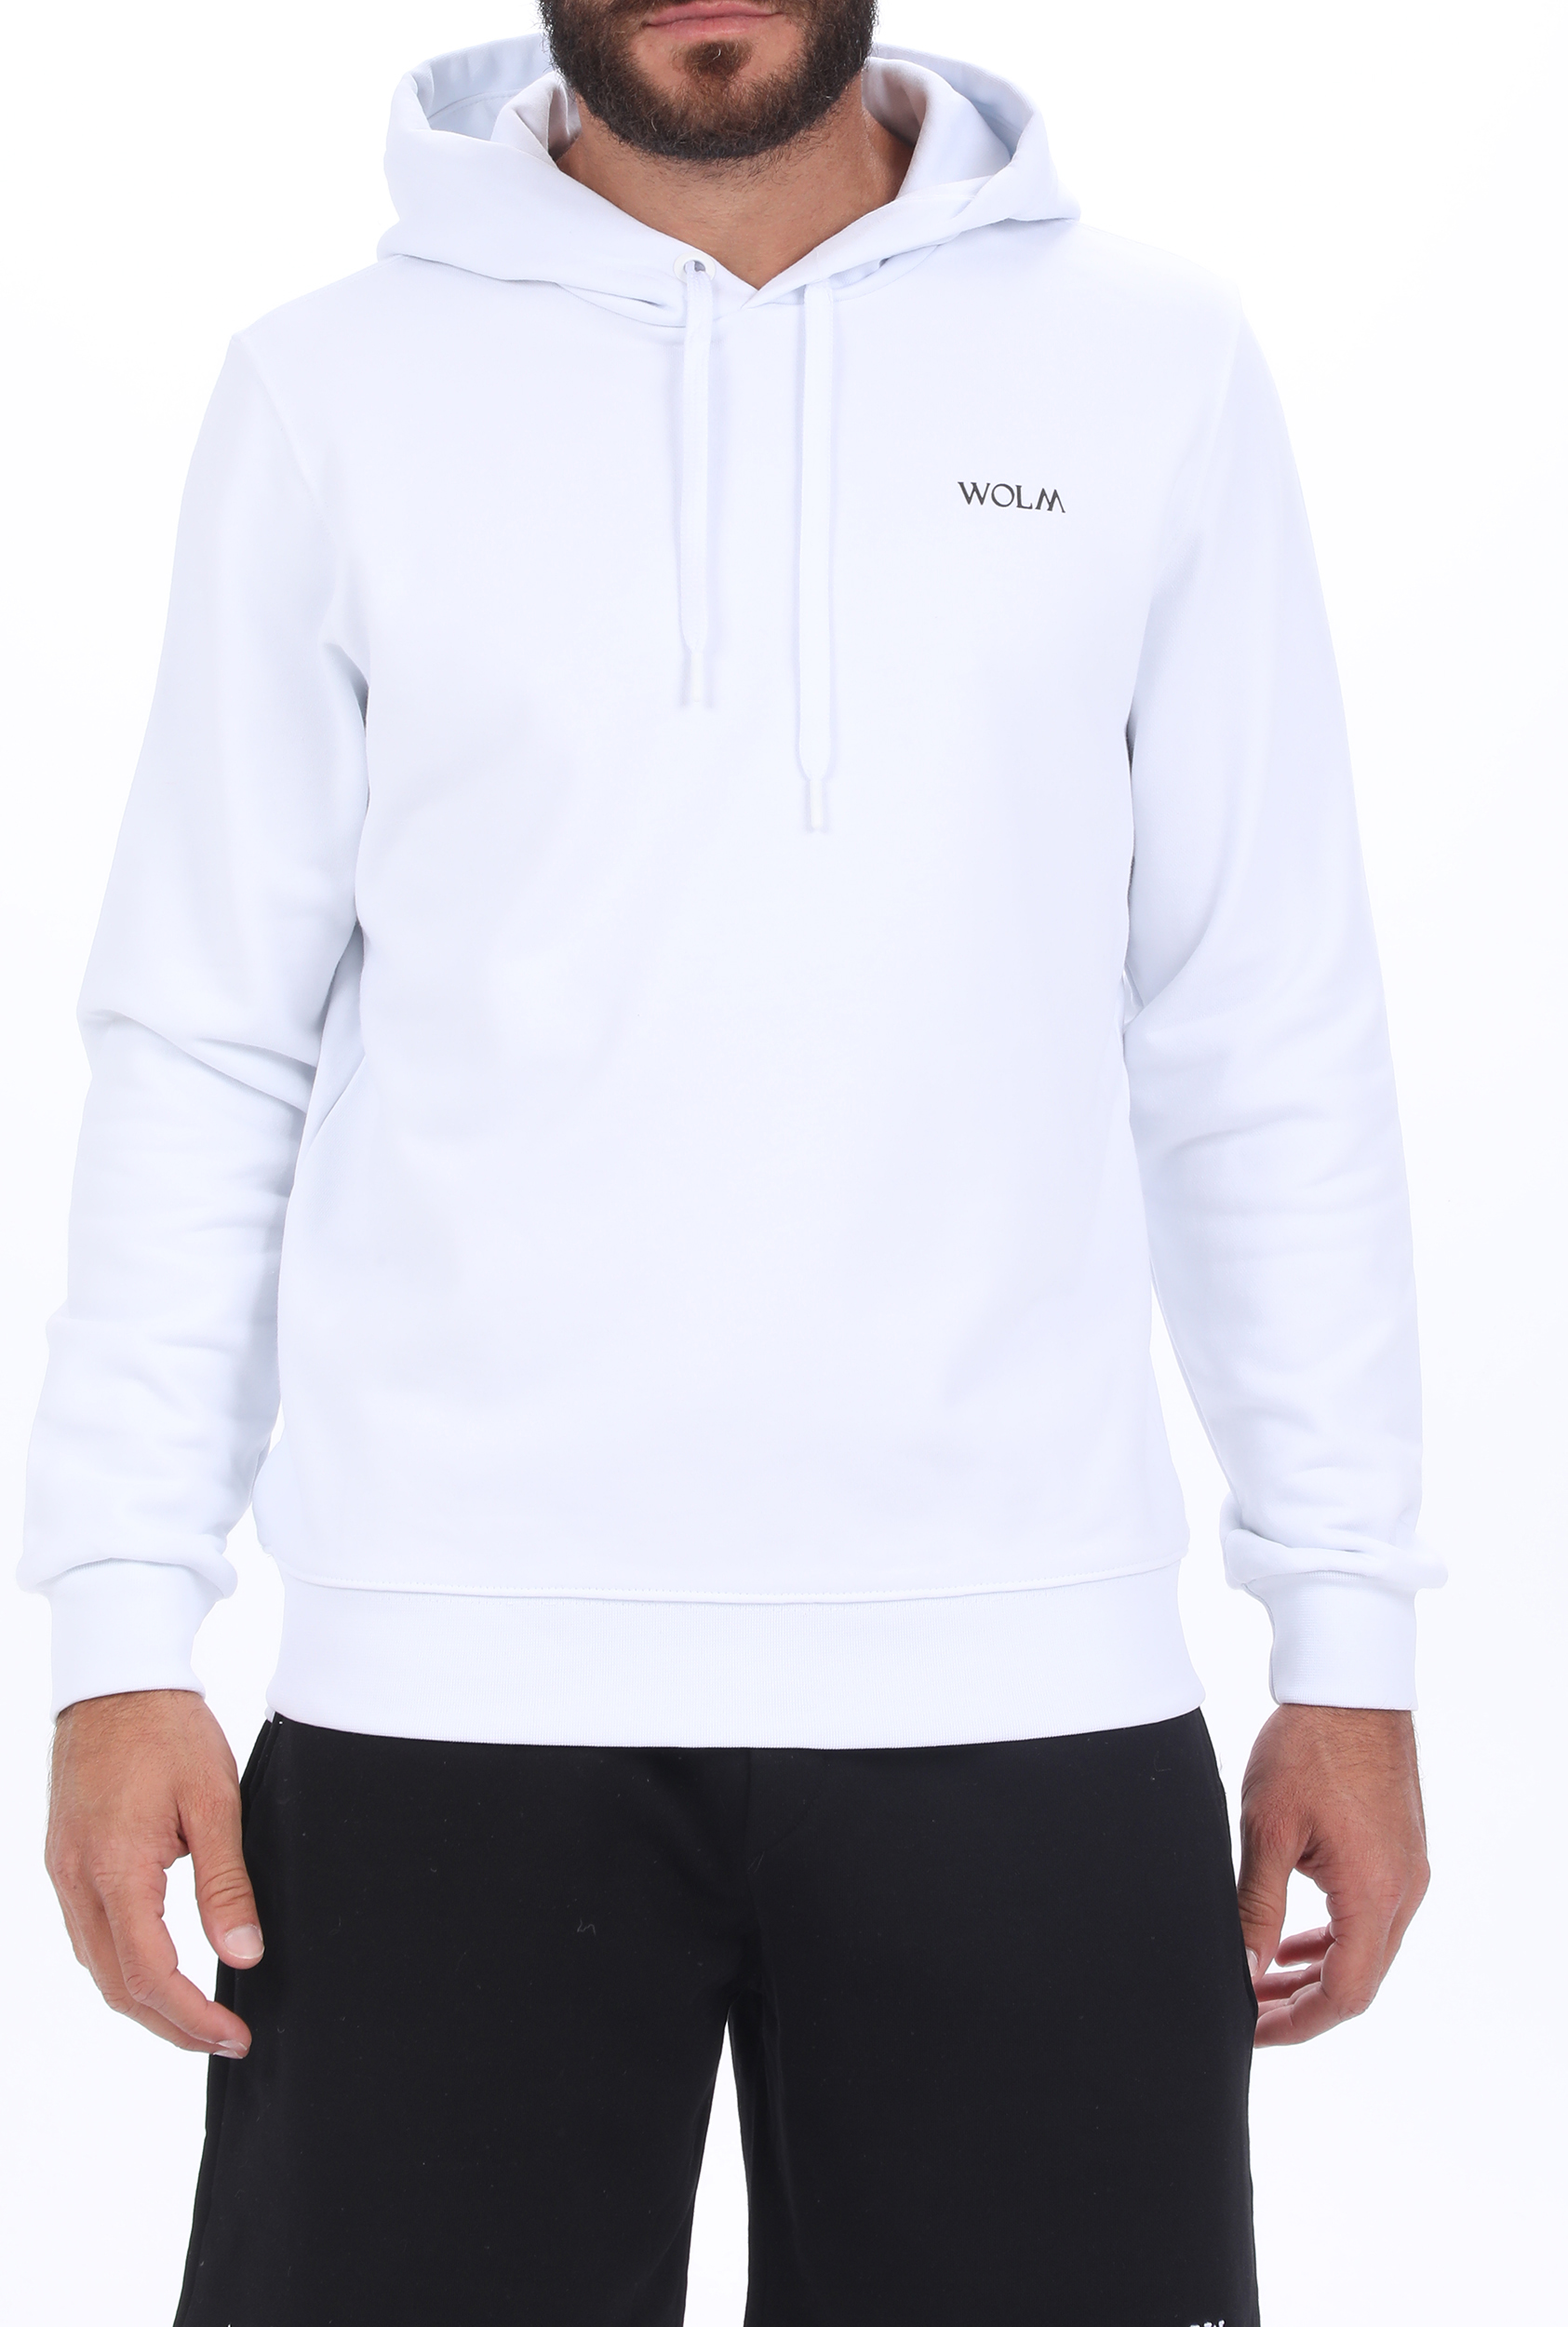 Ανδρικά/Ρούχα/Φούτερ/Μπλούζες WOLM - Ανδρική φούτερ μπλούζα WOLM λευκή